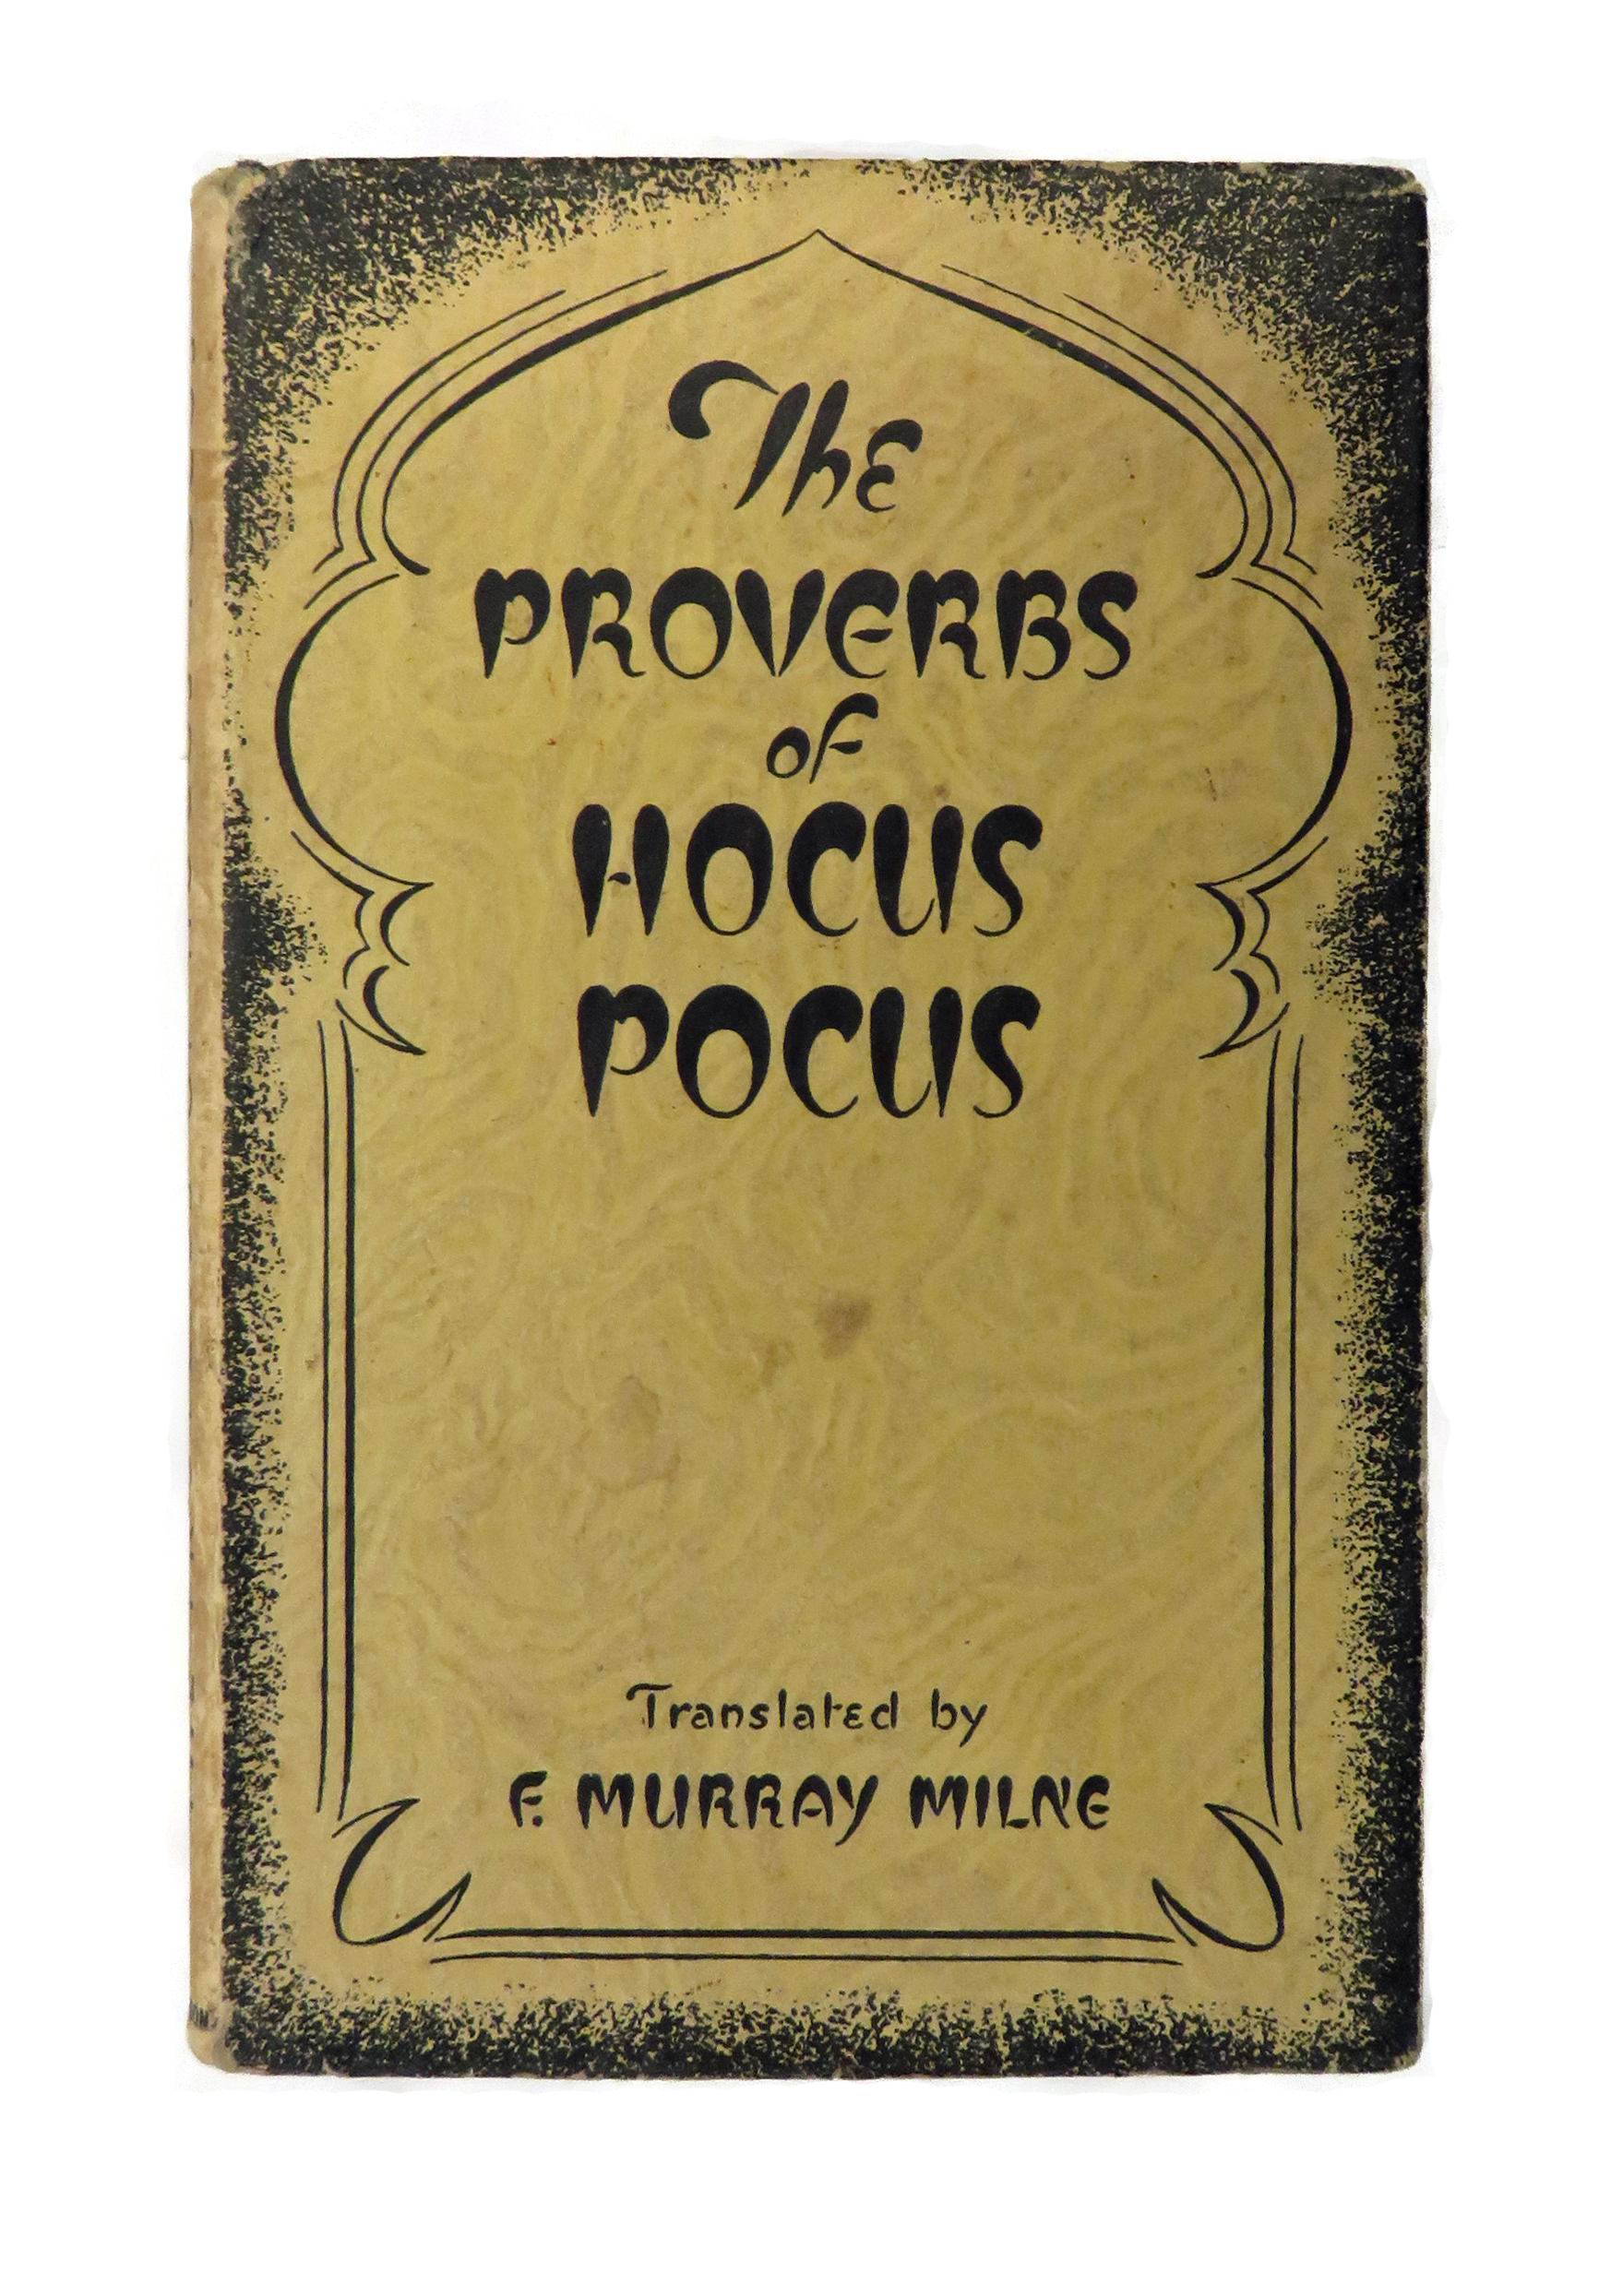 The Proverbs of Hocus Pocus